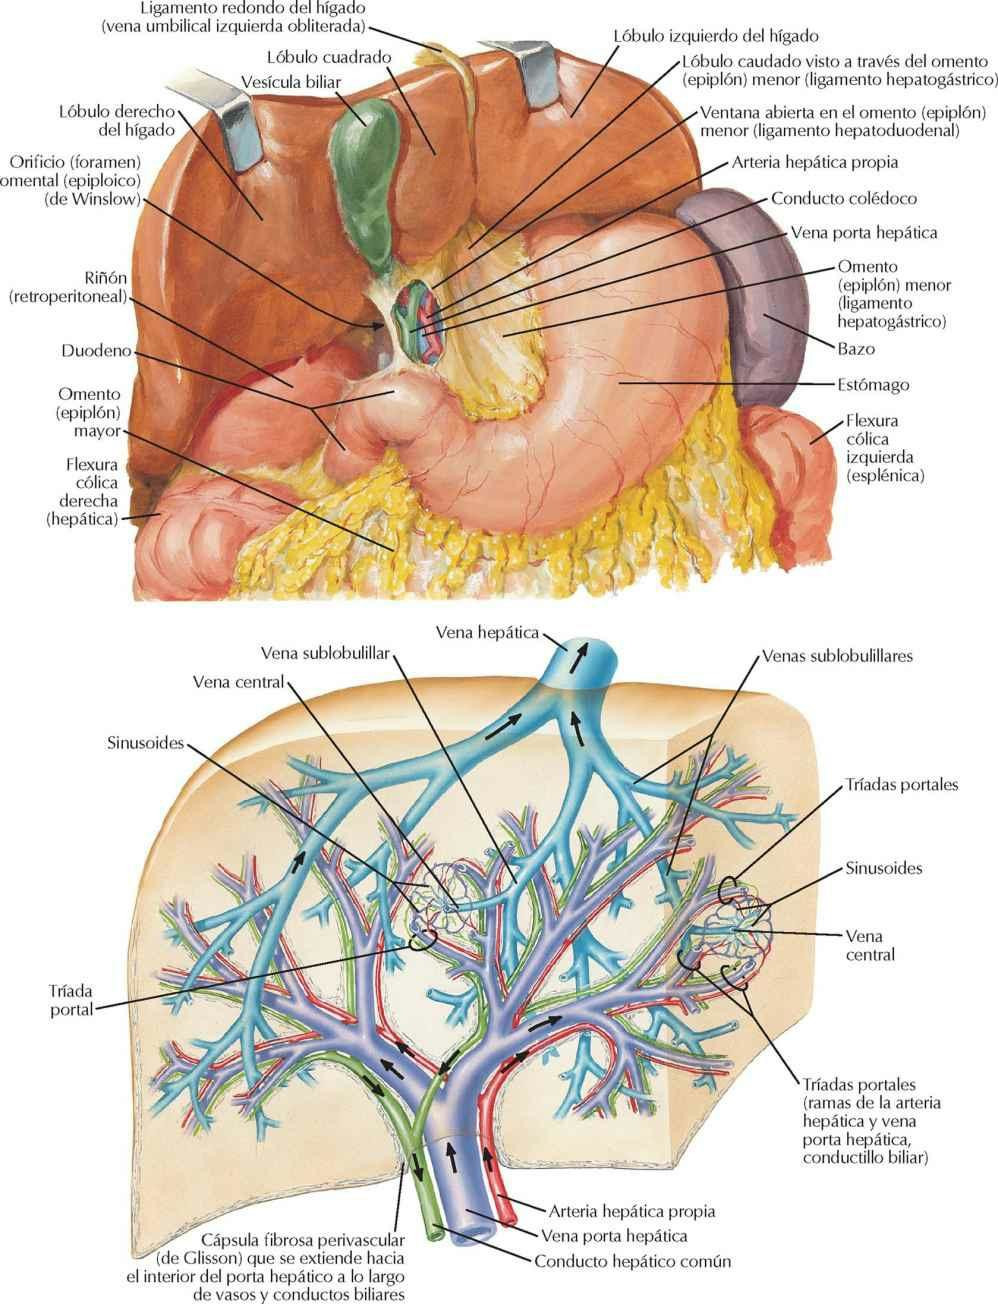 Hígado in situ: sistemas vascular y de conductos